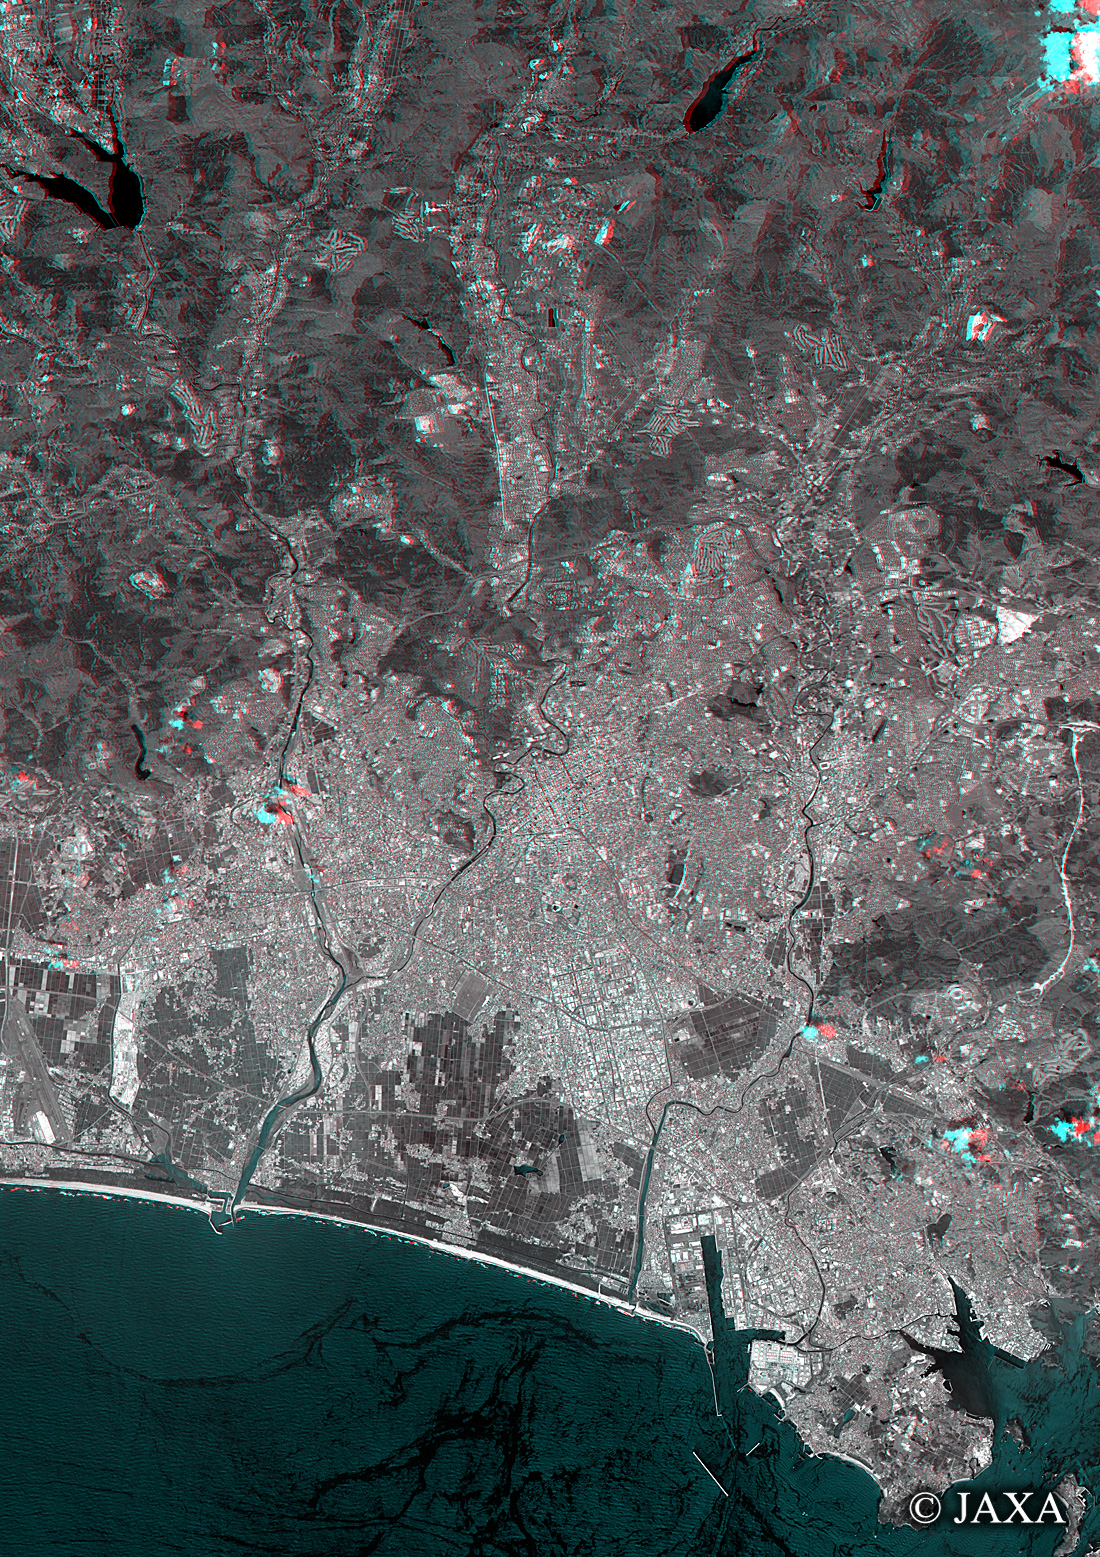 だいちから見た日本の都市 仙台市立体視画像:衛星画像